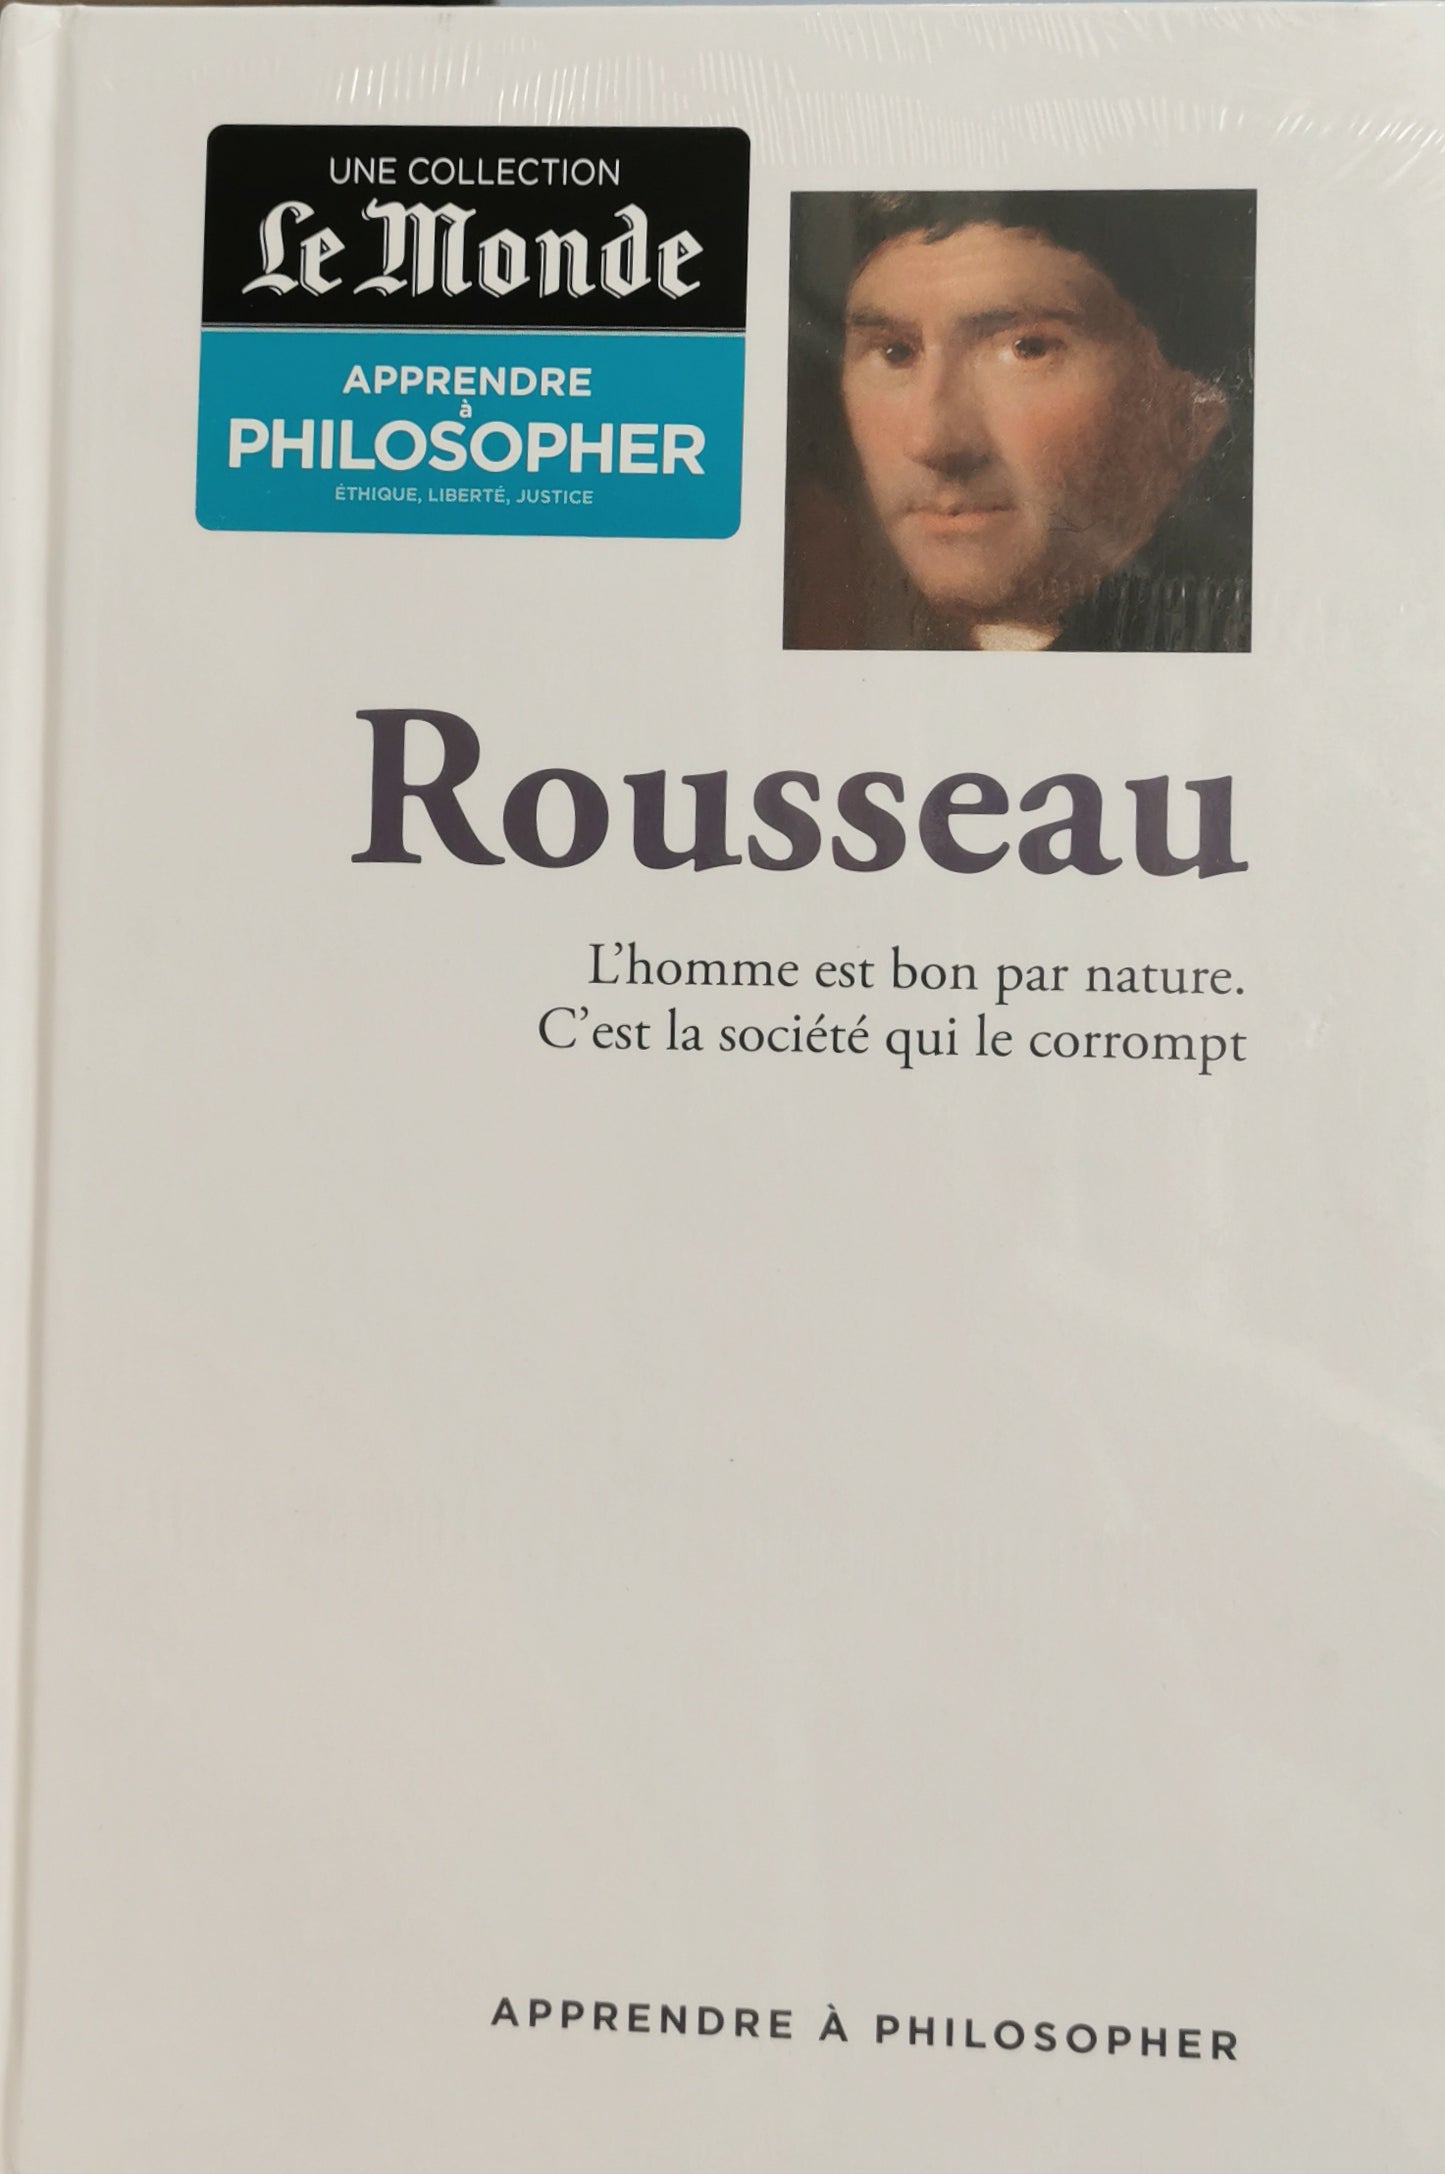 L'homme est bon par nature. C'est la société qui le corrompt, Rousseau, "Apprendre à philosopher", RBA, 2016.